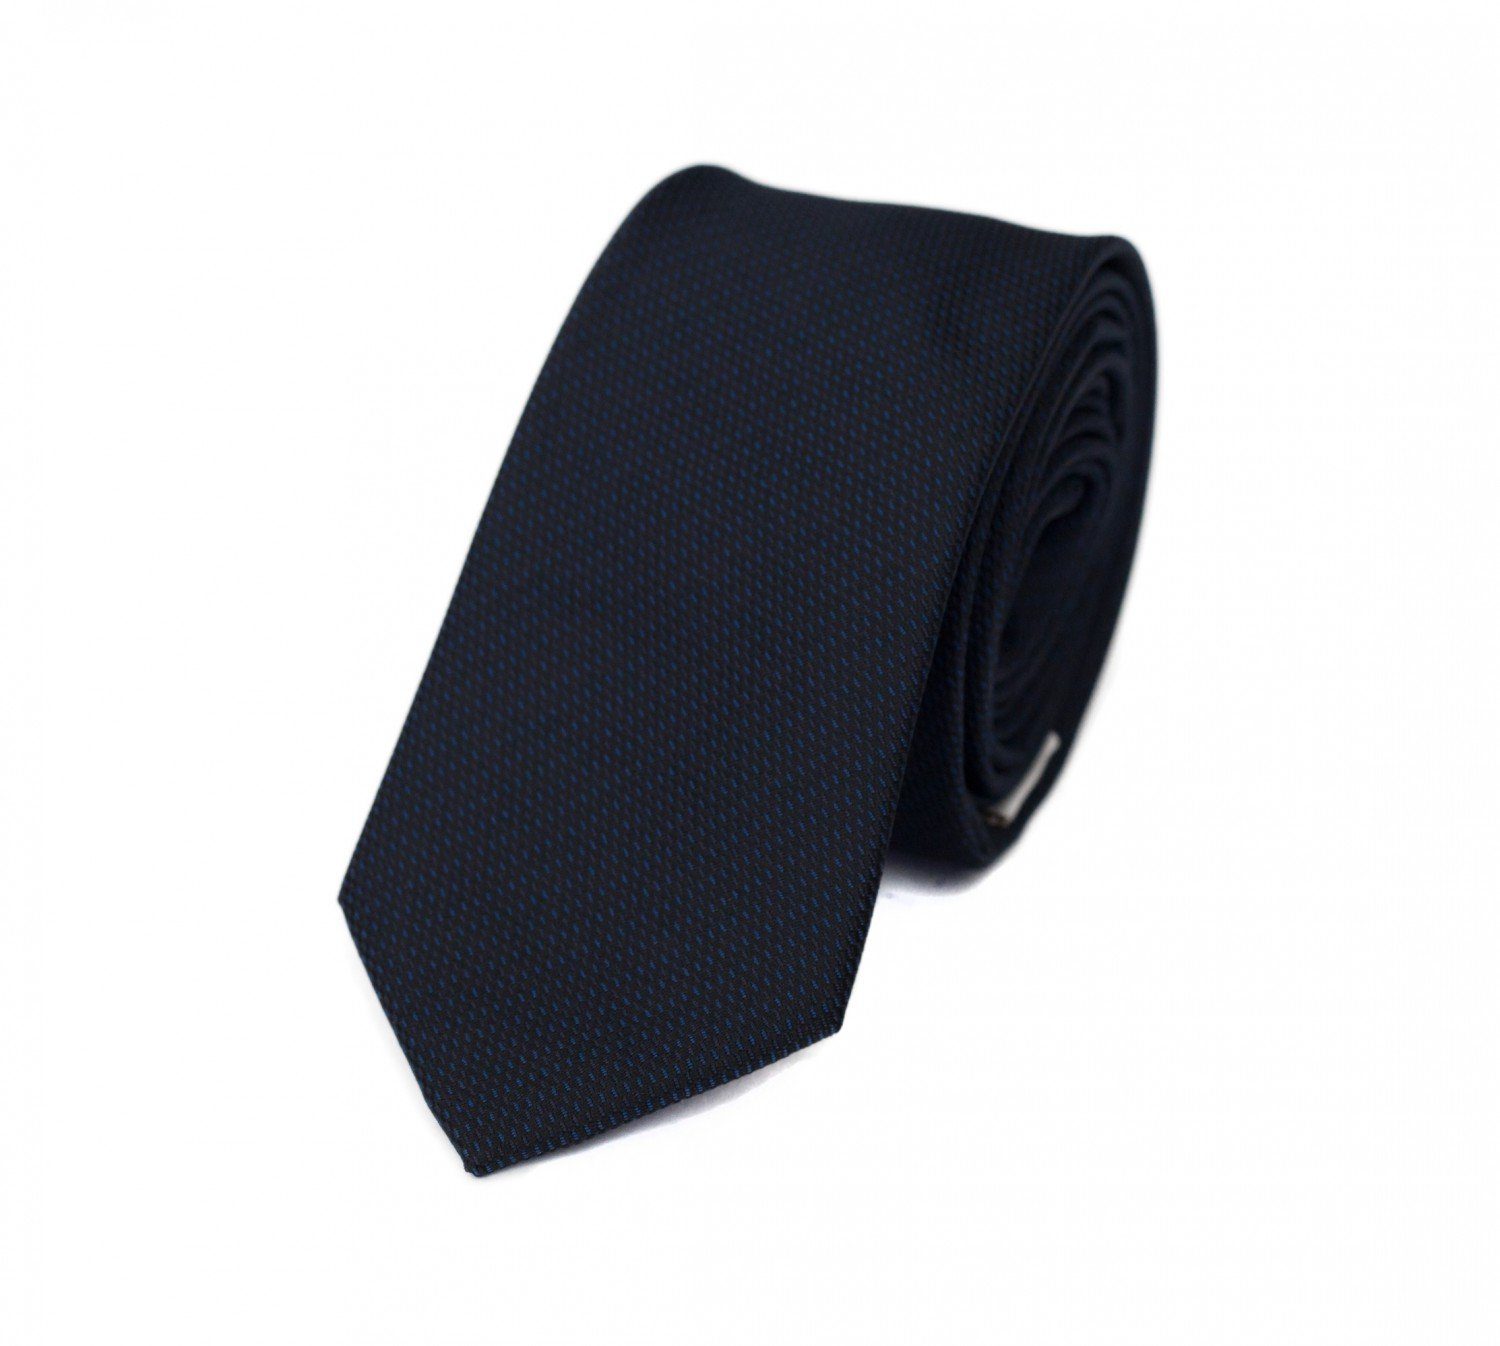 Fabio Farini Krawatte Schwarze Herren Schlips - dunkle Krawatten in 6cm Breite (ohne Box, Gemustert) Schmal (6cm), Schwarz/Blau